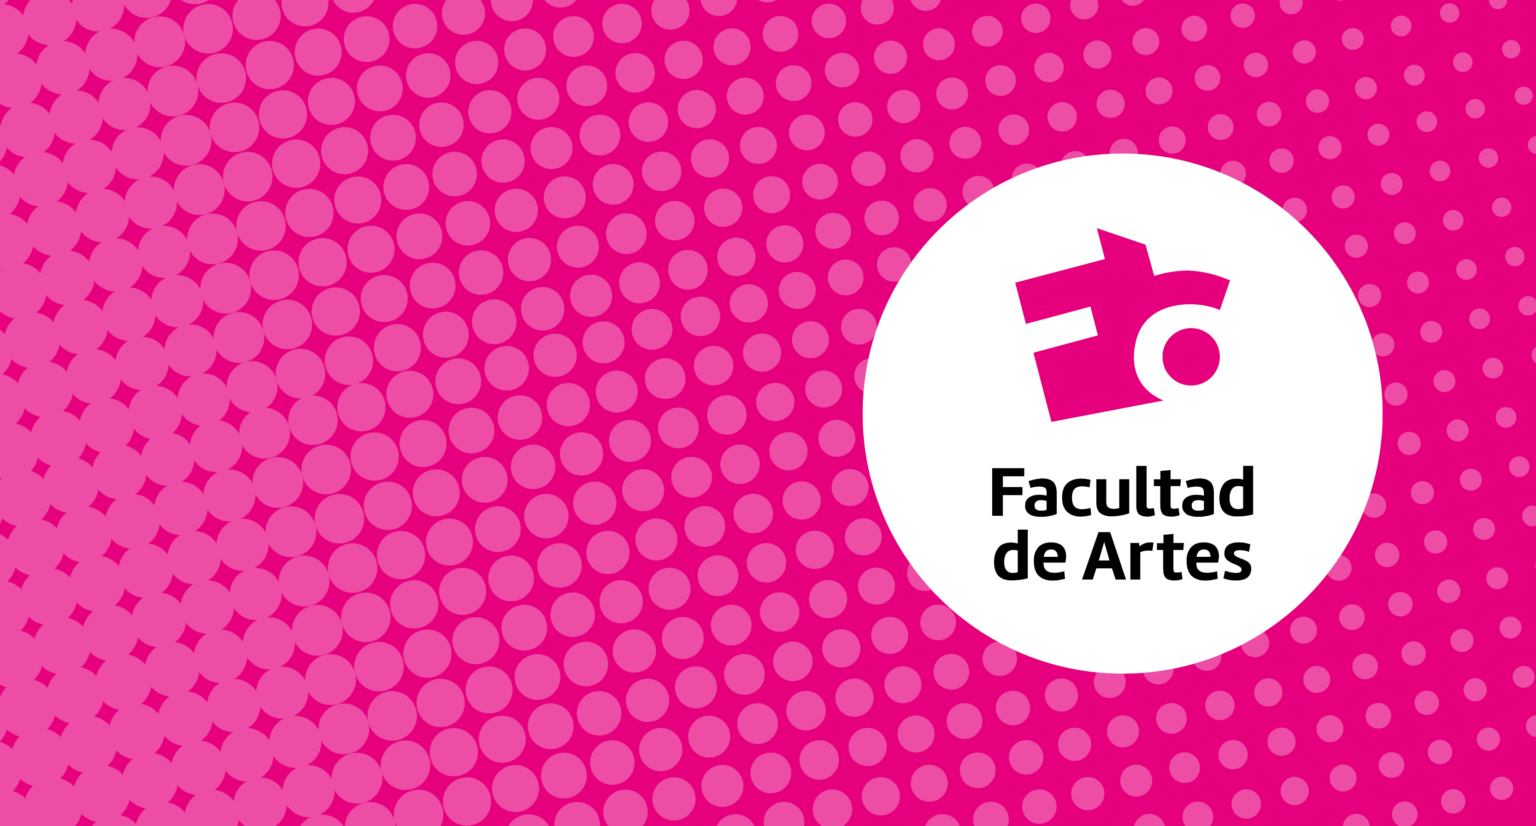 Fondo magenta con círculos tonos en rosado que conforma una trama tipo textura. A la derecha círculo en blanco con la nueva identidad visual de Facultad de Artes.